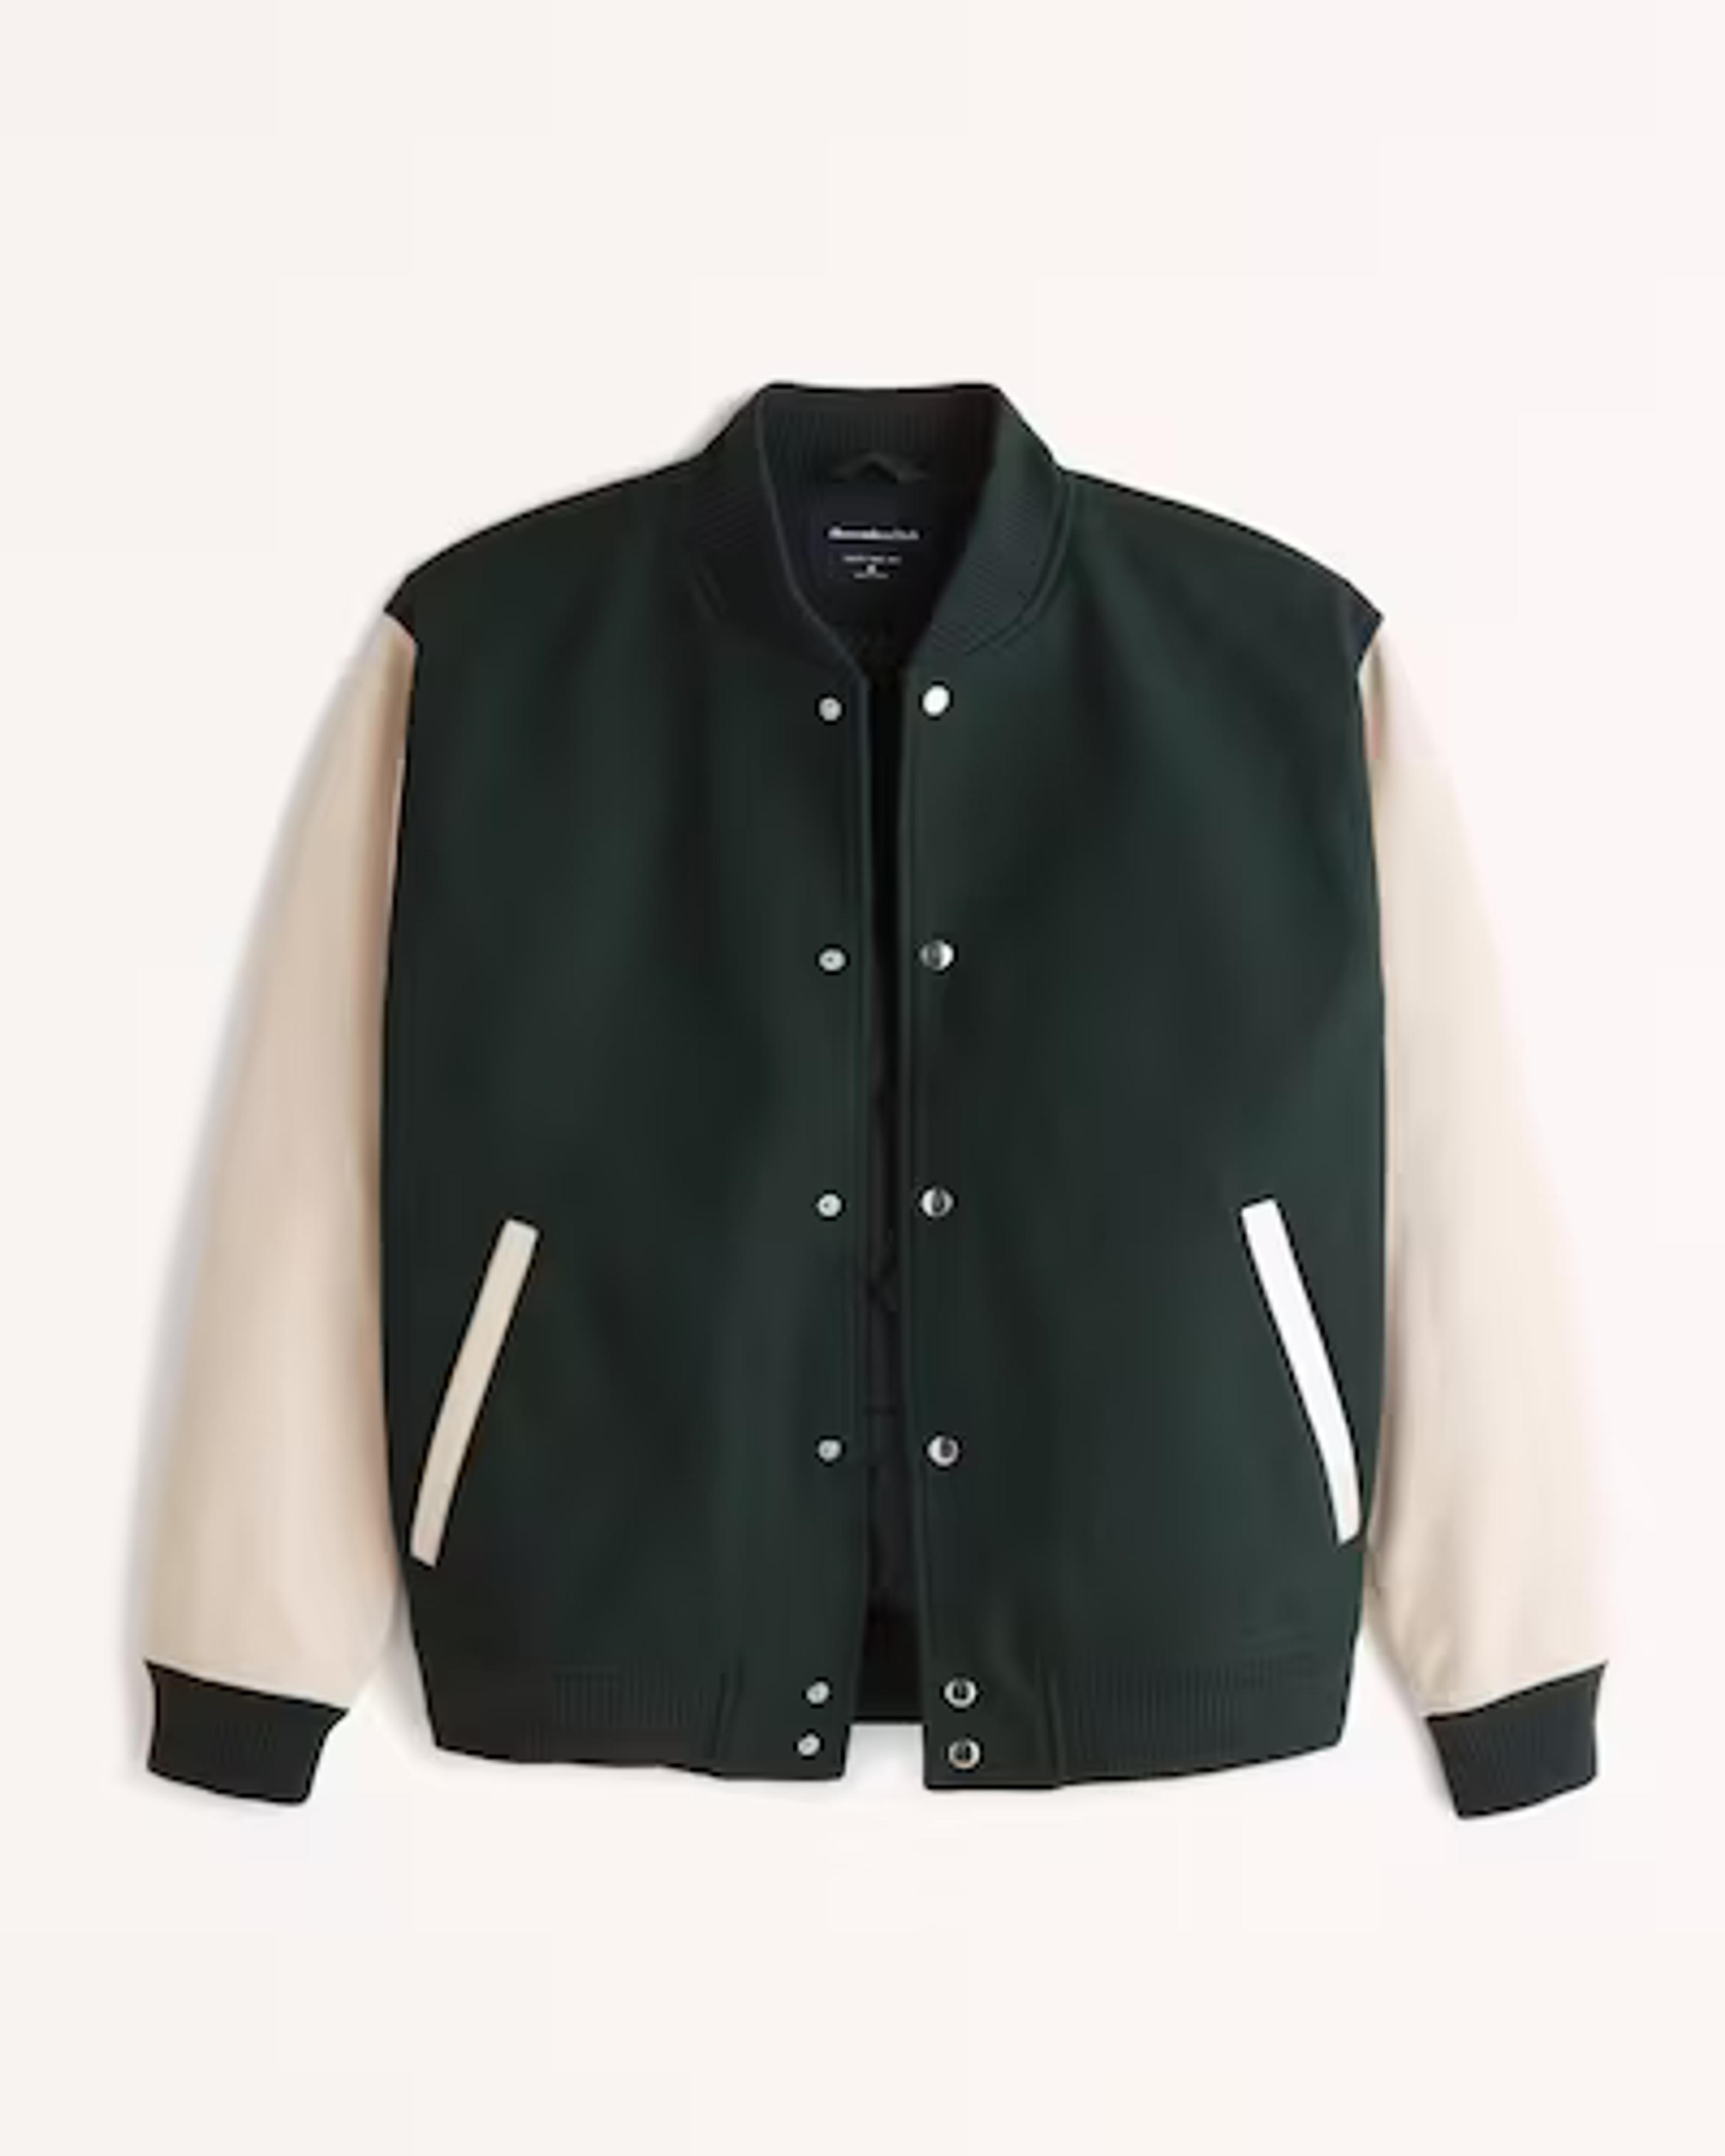 CELINE HOMME Appliquéd Wool-Blend and Leather Bomber Jacket | MR PORTER